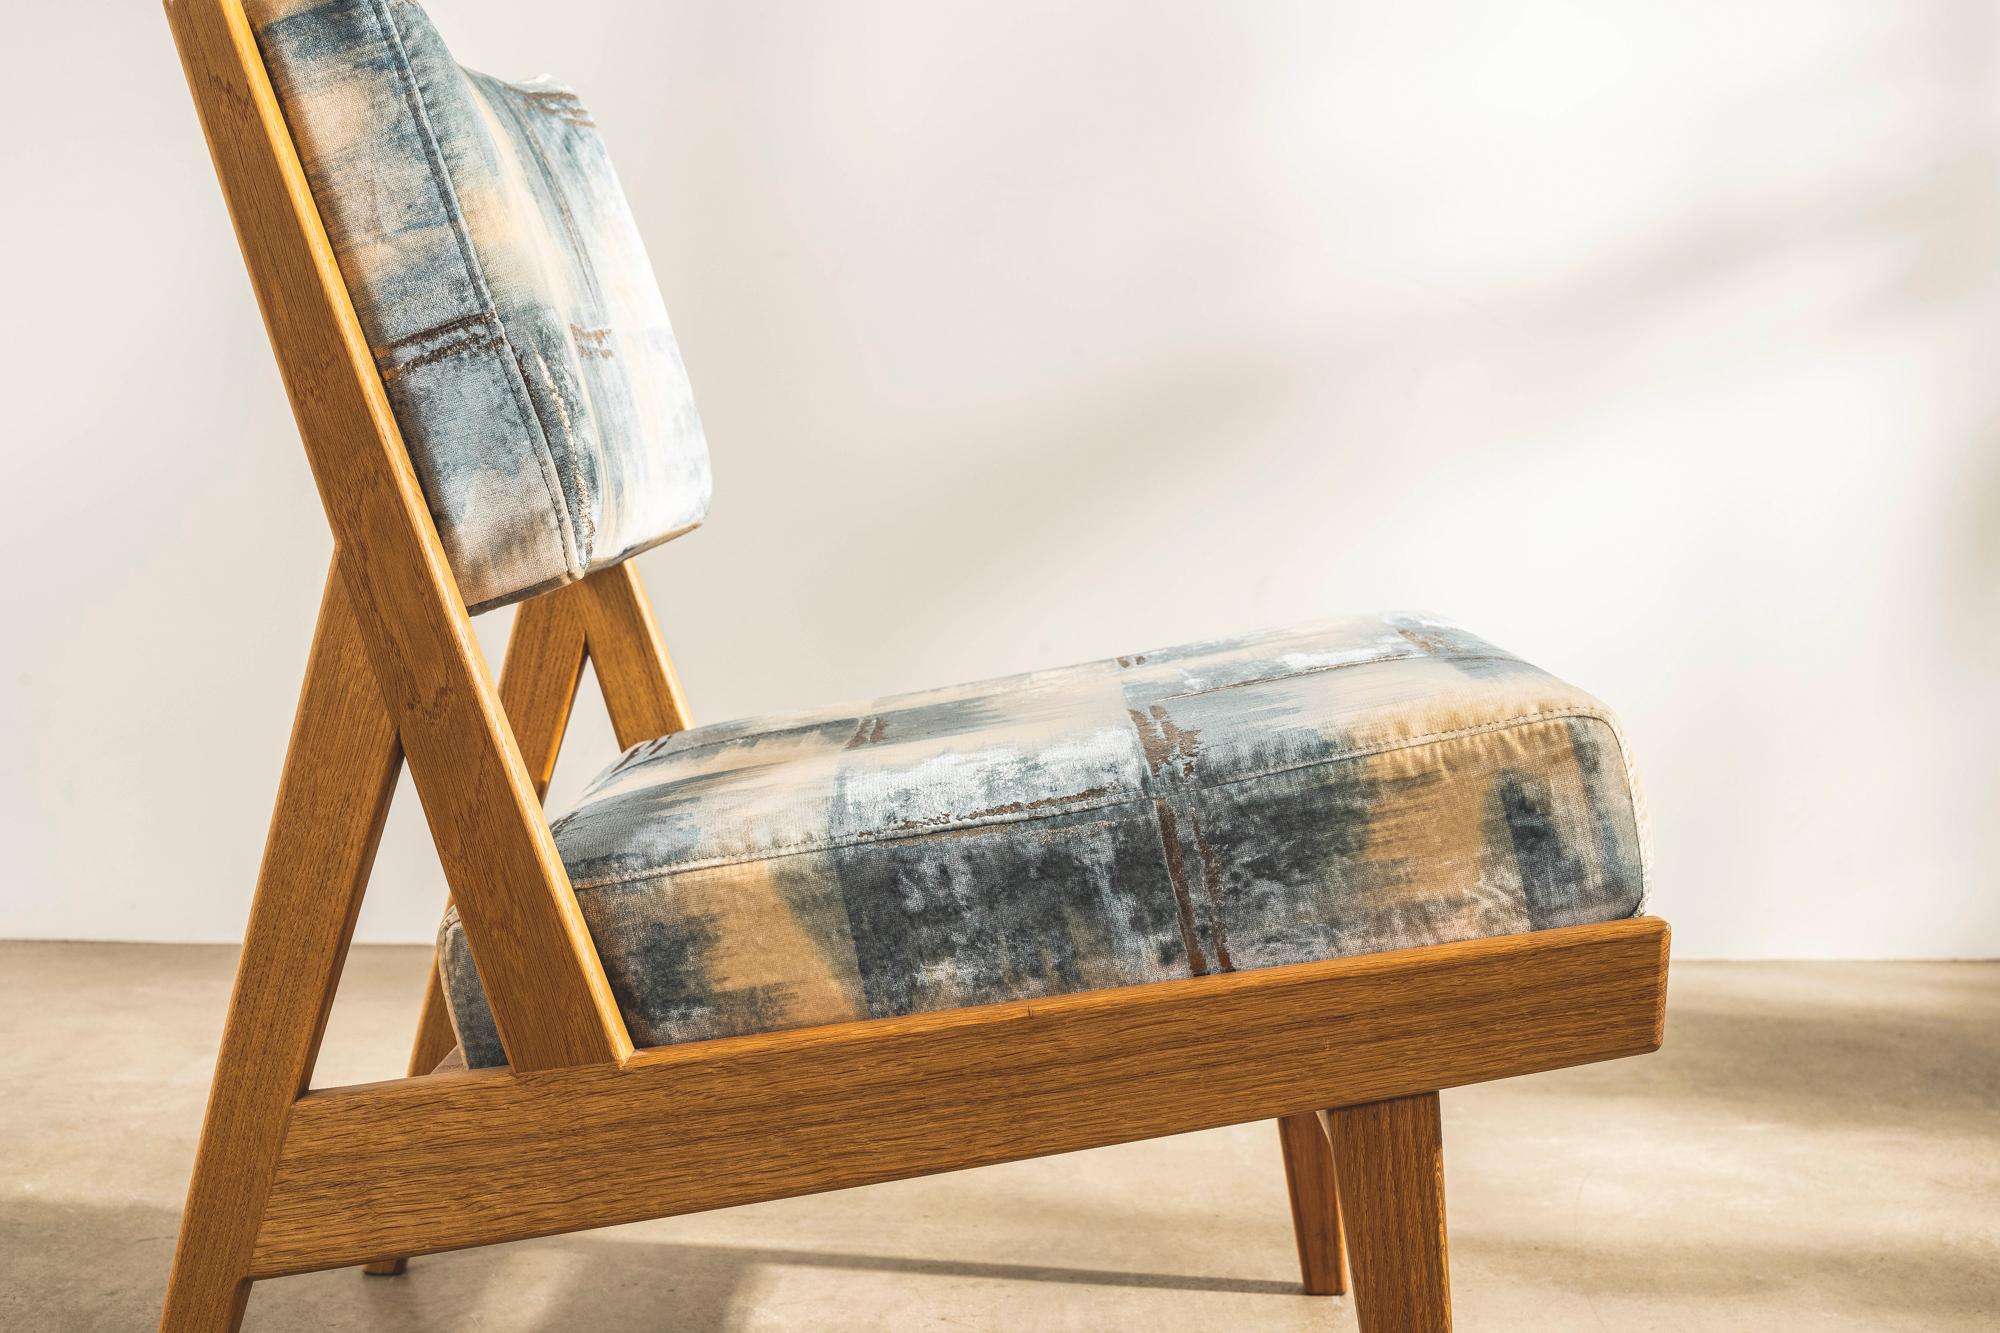 La chaise sans bras U431 a été présentée pour la première fois en 1955 par Jens Risom Inc. Conçu par le légendaire designer américain d'origine danoise, il s'agit d'une pièce intemporelle qui convient aussi bien aux environnements résidentiels que